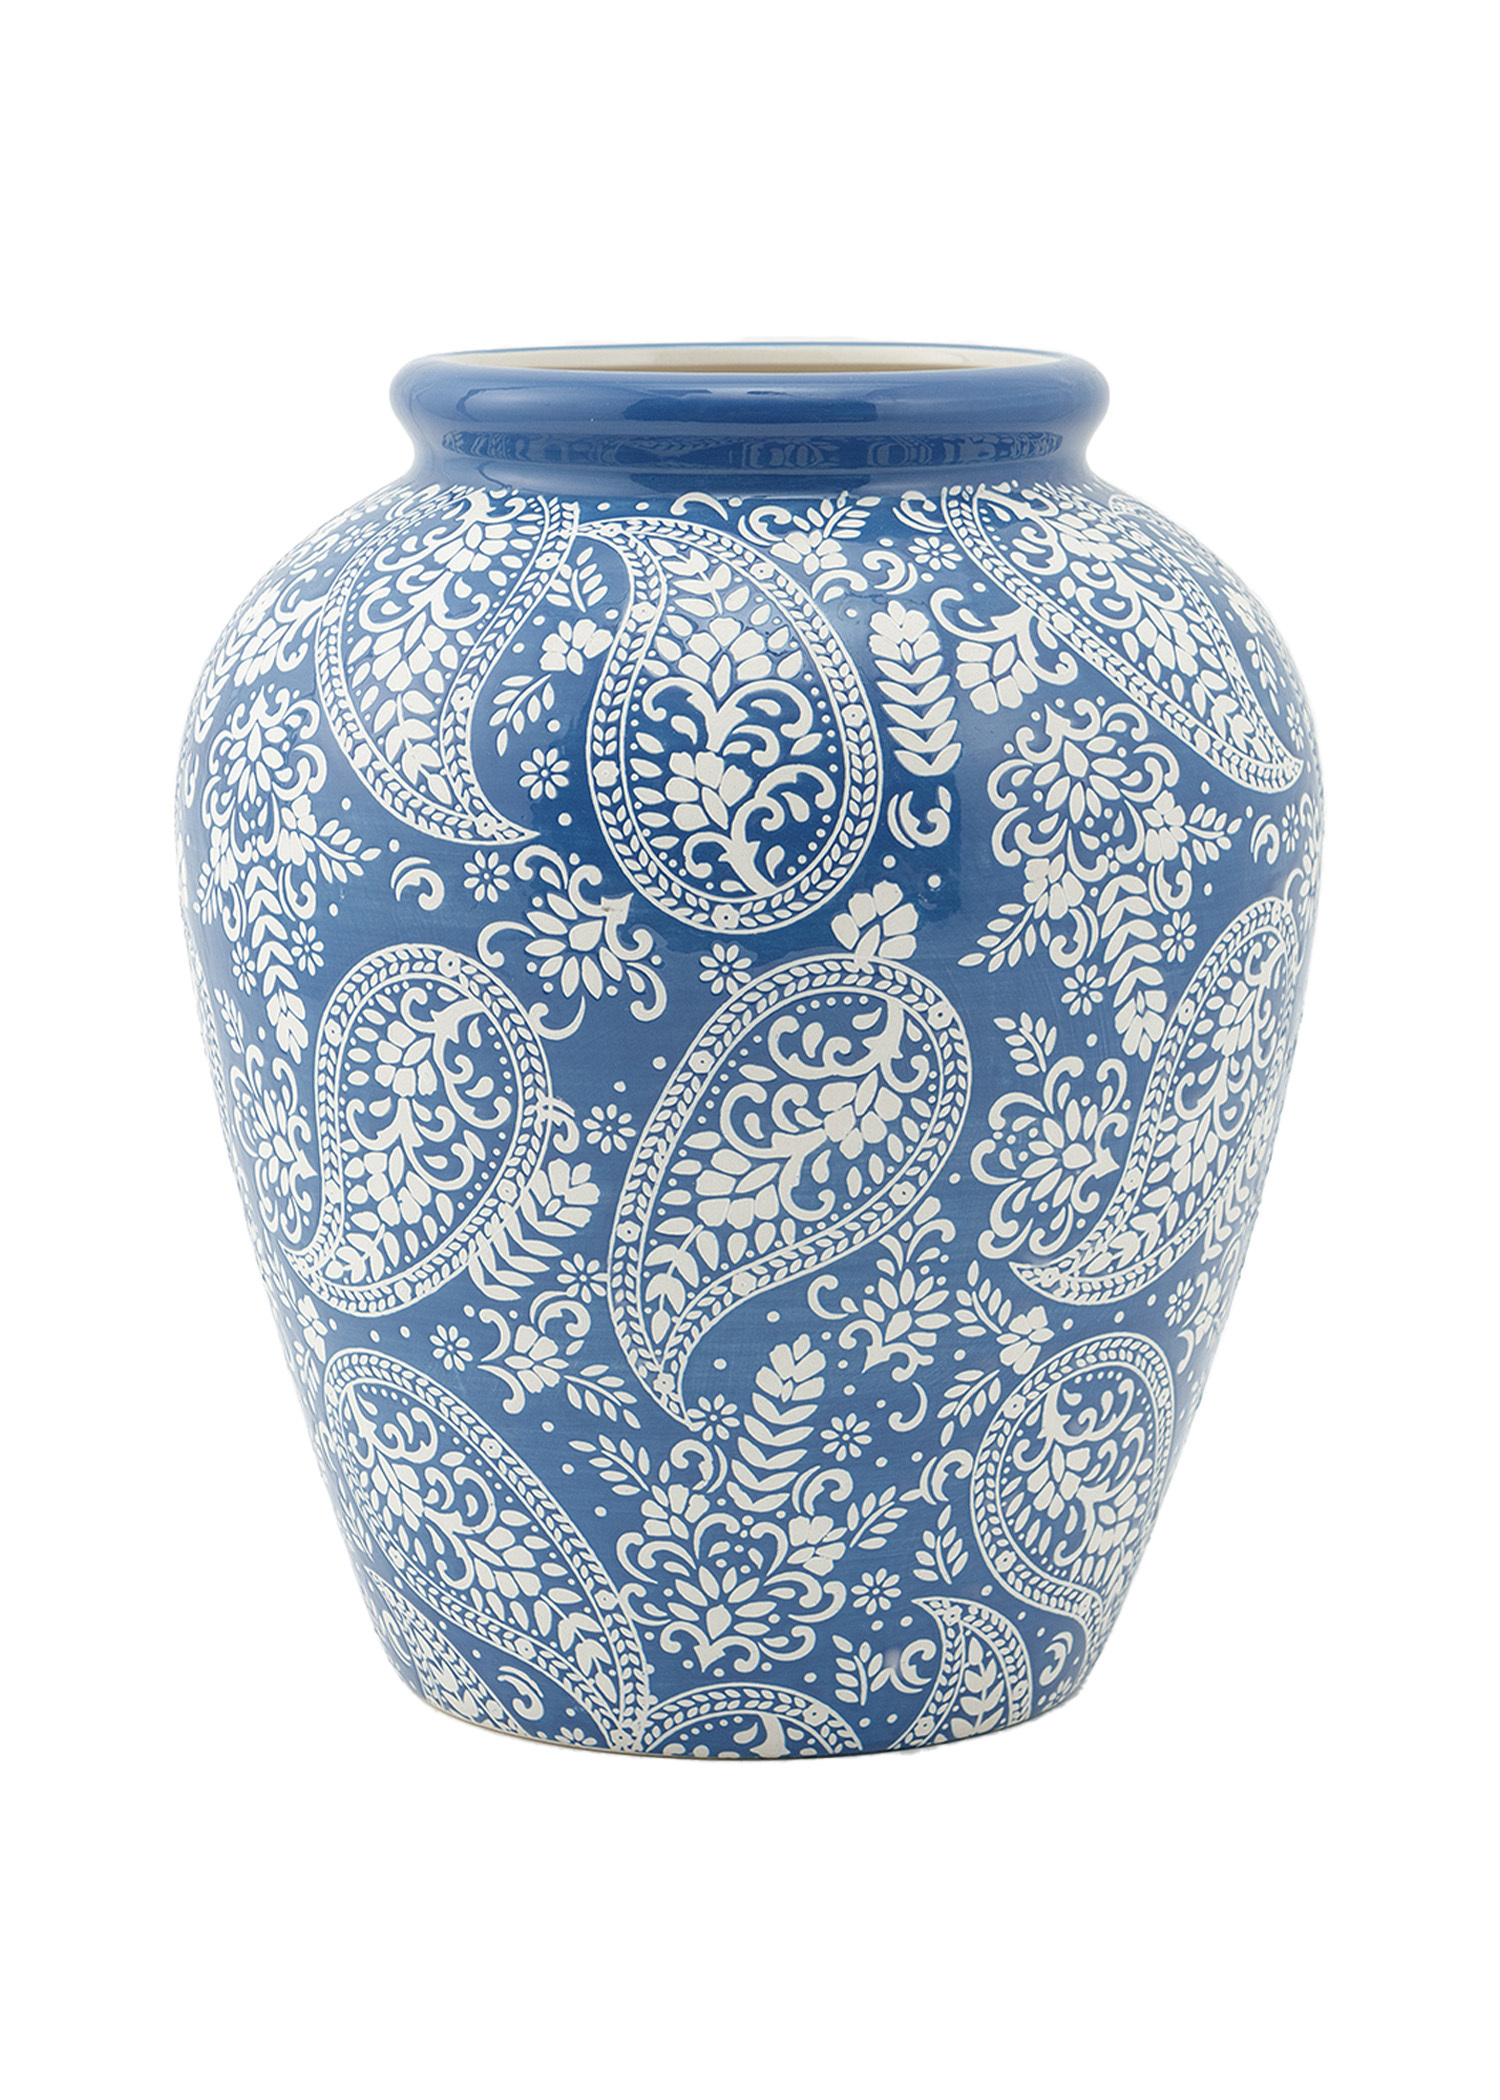 Large paisley patterned vase Image 0